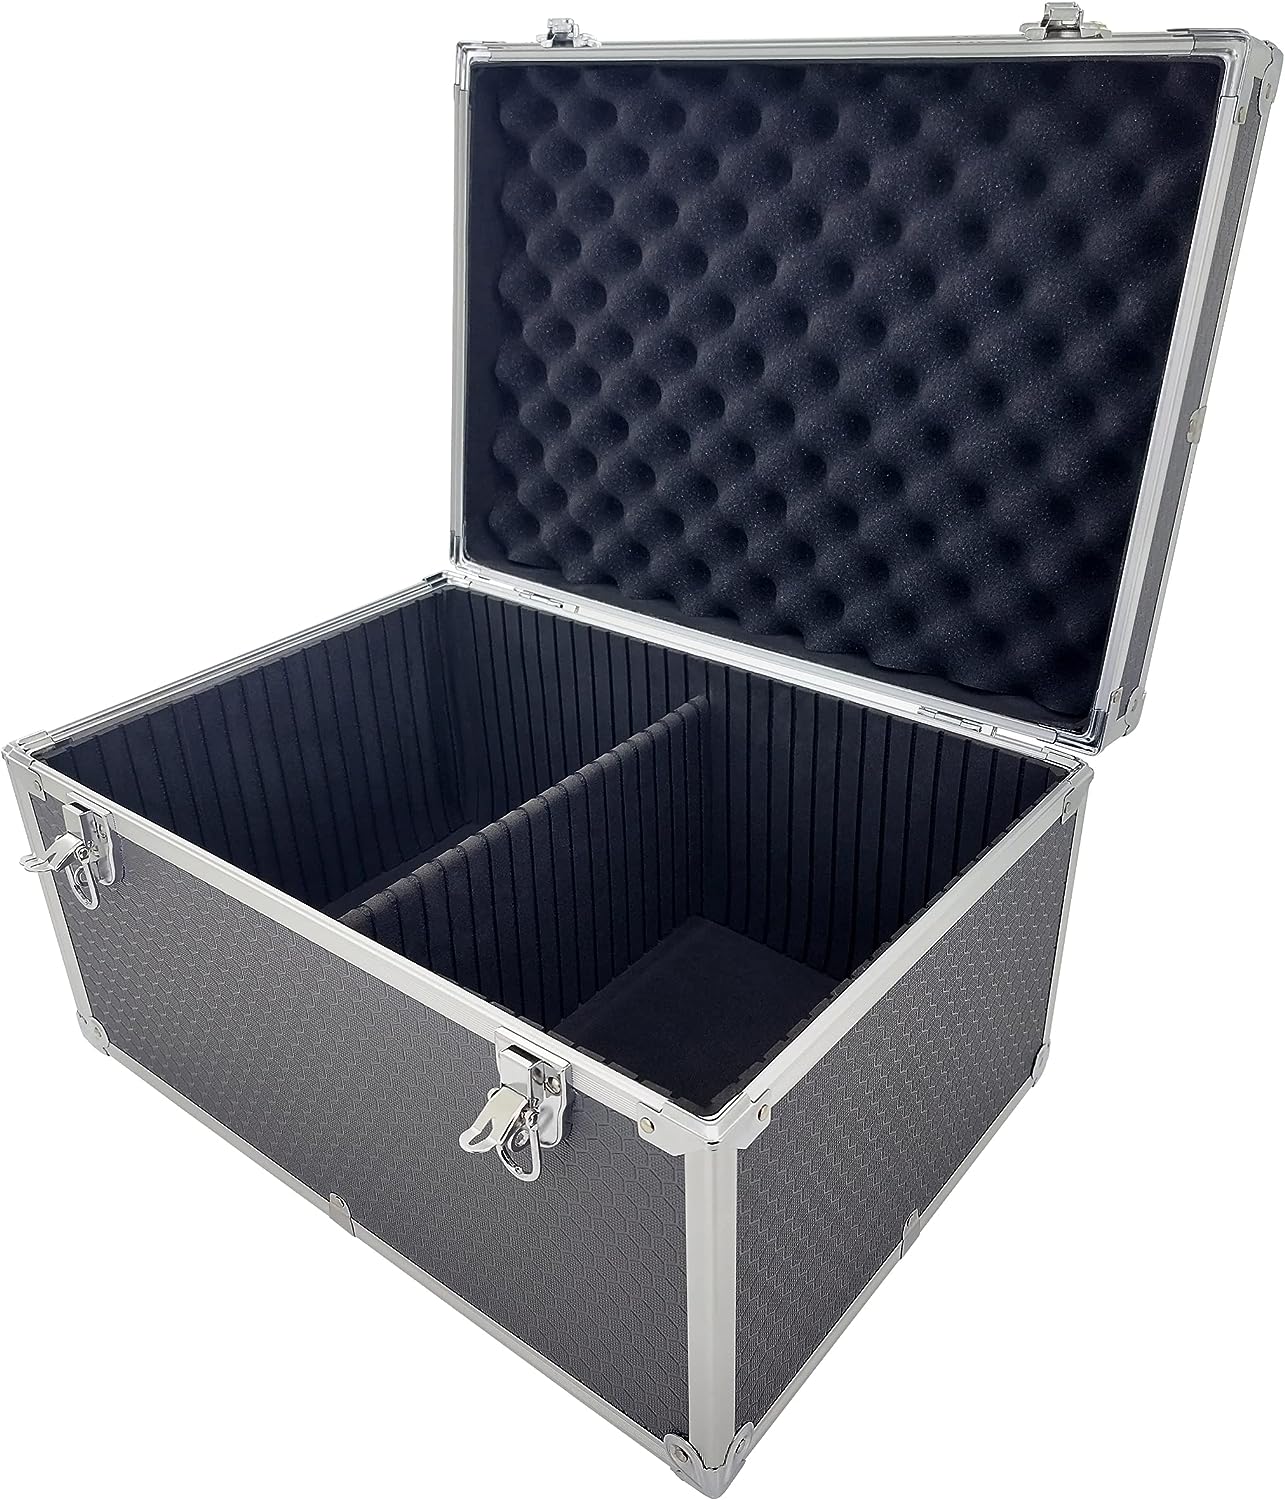 Maplin Aluminium 240 x 450 x 310mm Flight Case with Internal Divider - Grey